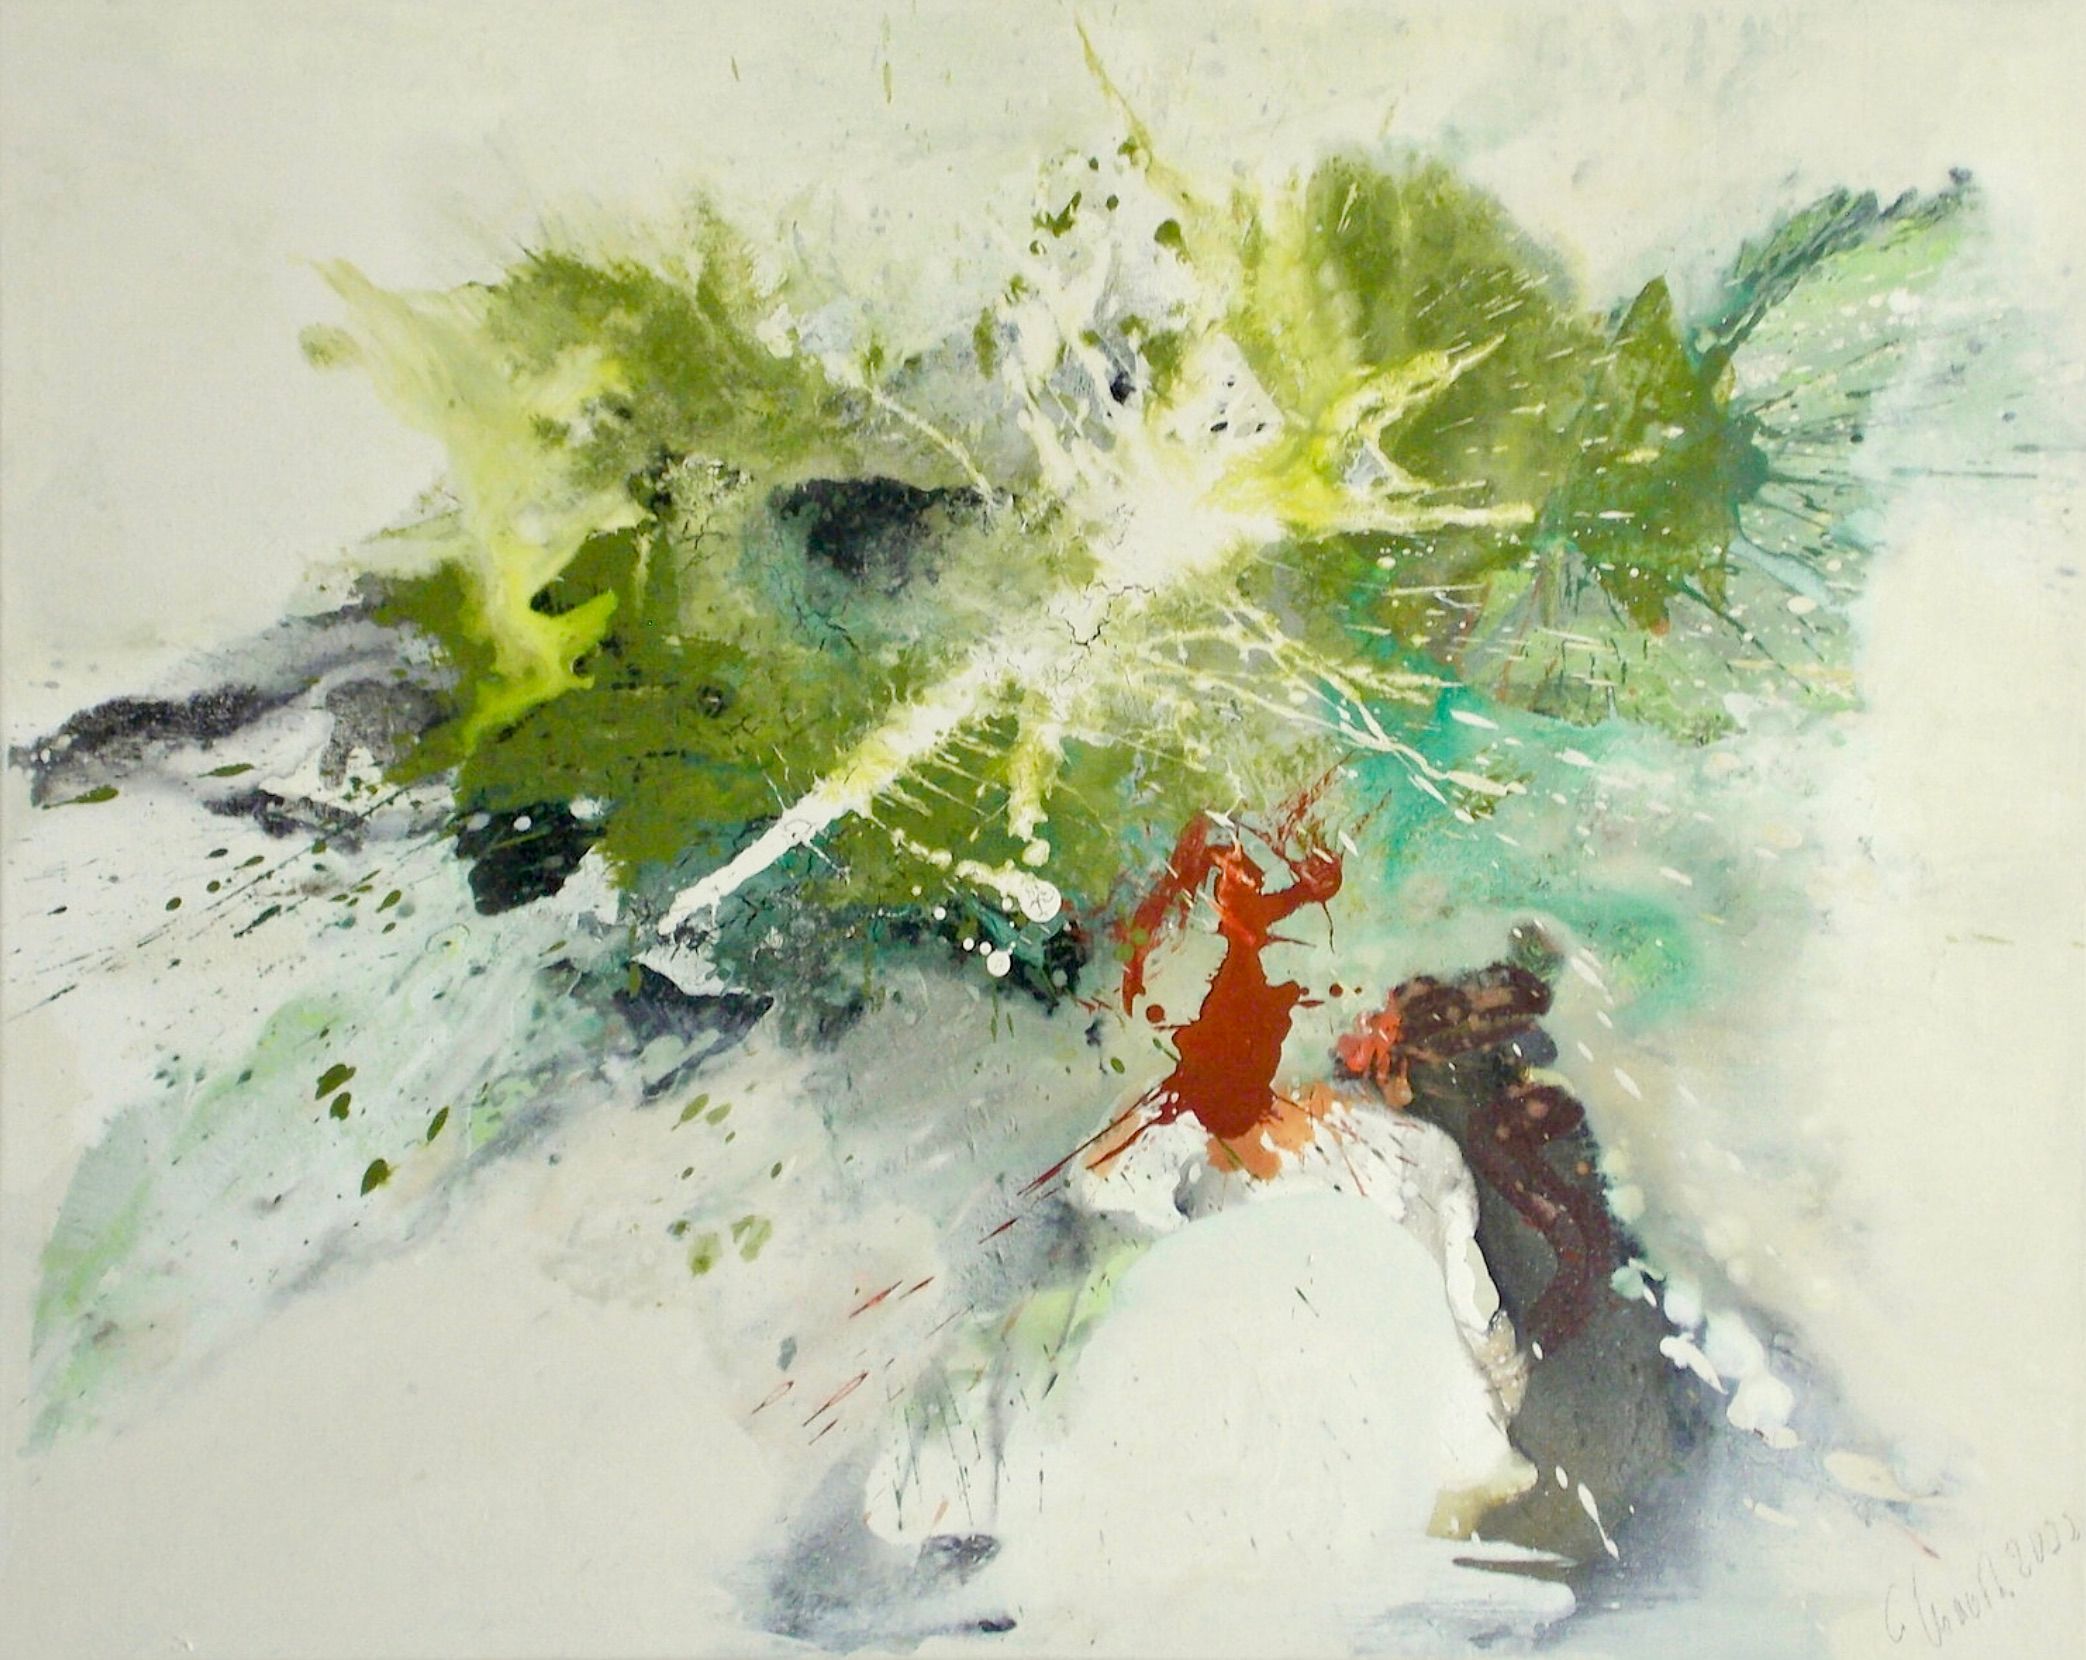 Dans le tableau expressionniste, abstrait et coloré de Christa Haack "Sehnsucht nach Frühling", les couleurs dominantes sont le vert, le turquoise, le beige et le rouge.